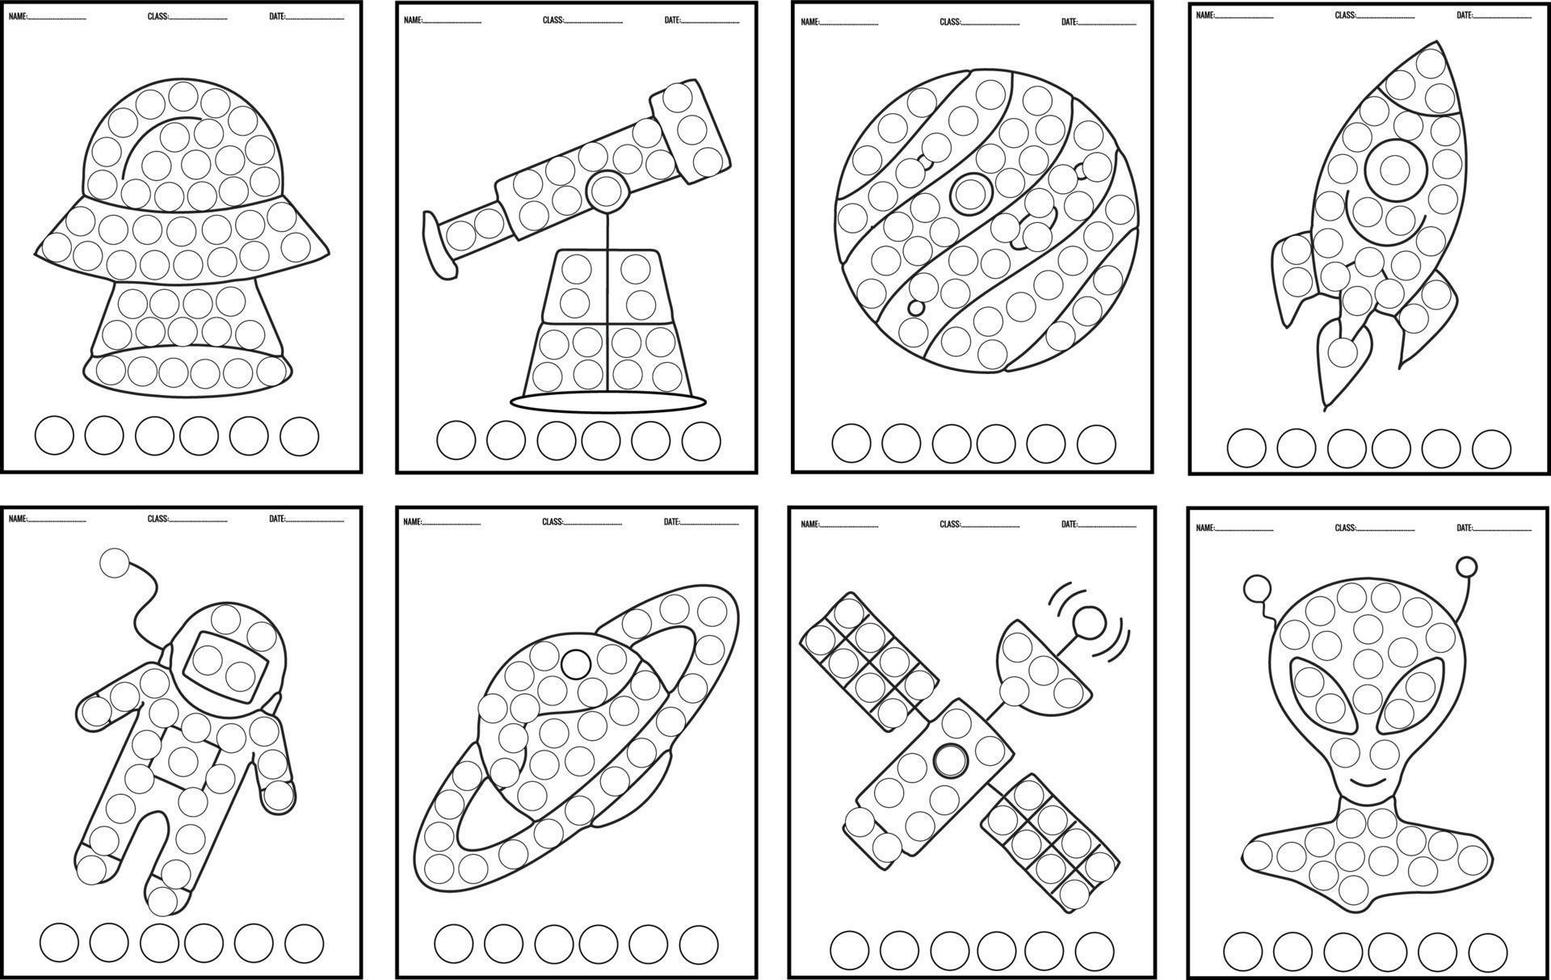 Weltraum-Punktmarker-Aktivitätsbuch Spaß mit Do-a-Dot-Marker-Aktivitätsbuch, gefüllt mit bunten Weltraum-Galaxie-Planeten Sonnensystem-Farbklecksen-Punkt-Malbüchern für Vorschulkinder und Kleinkinder vektor